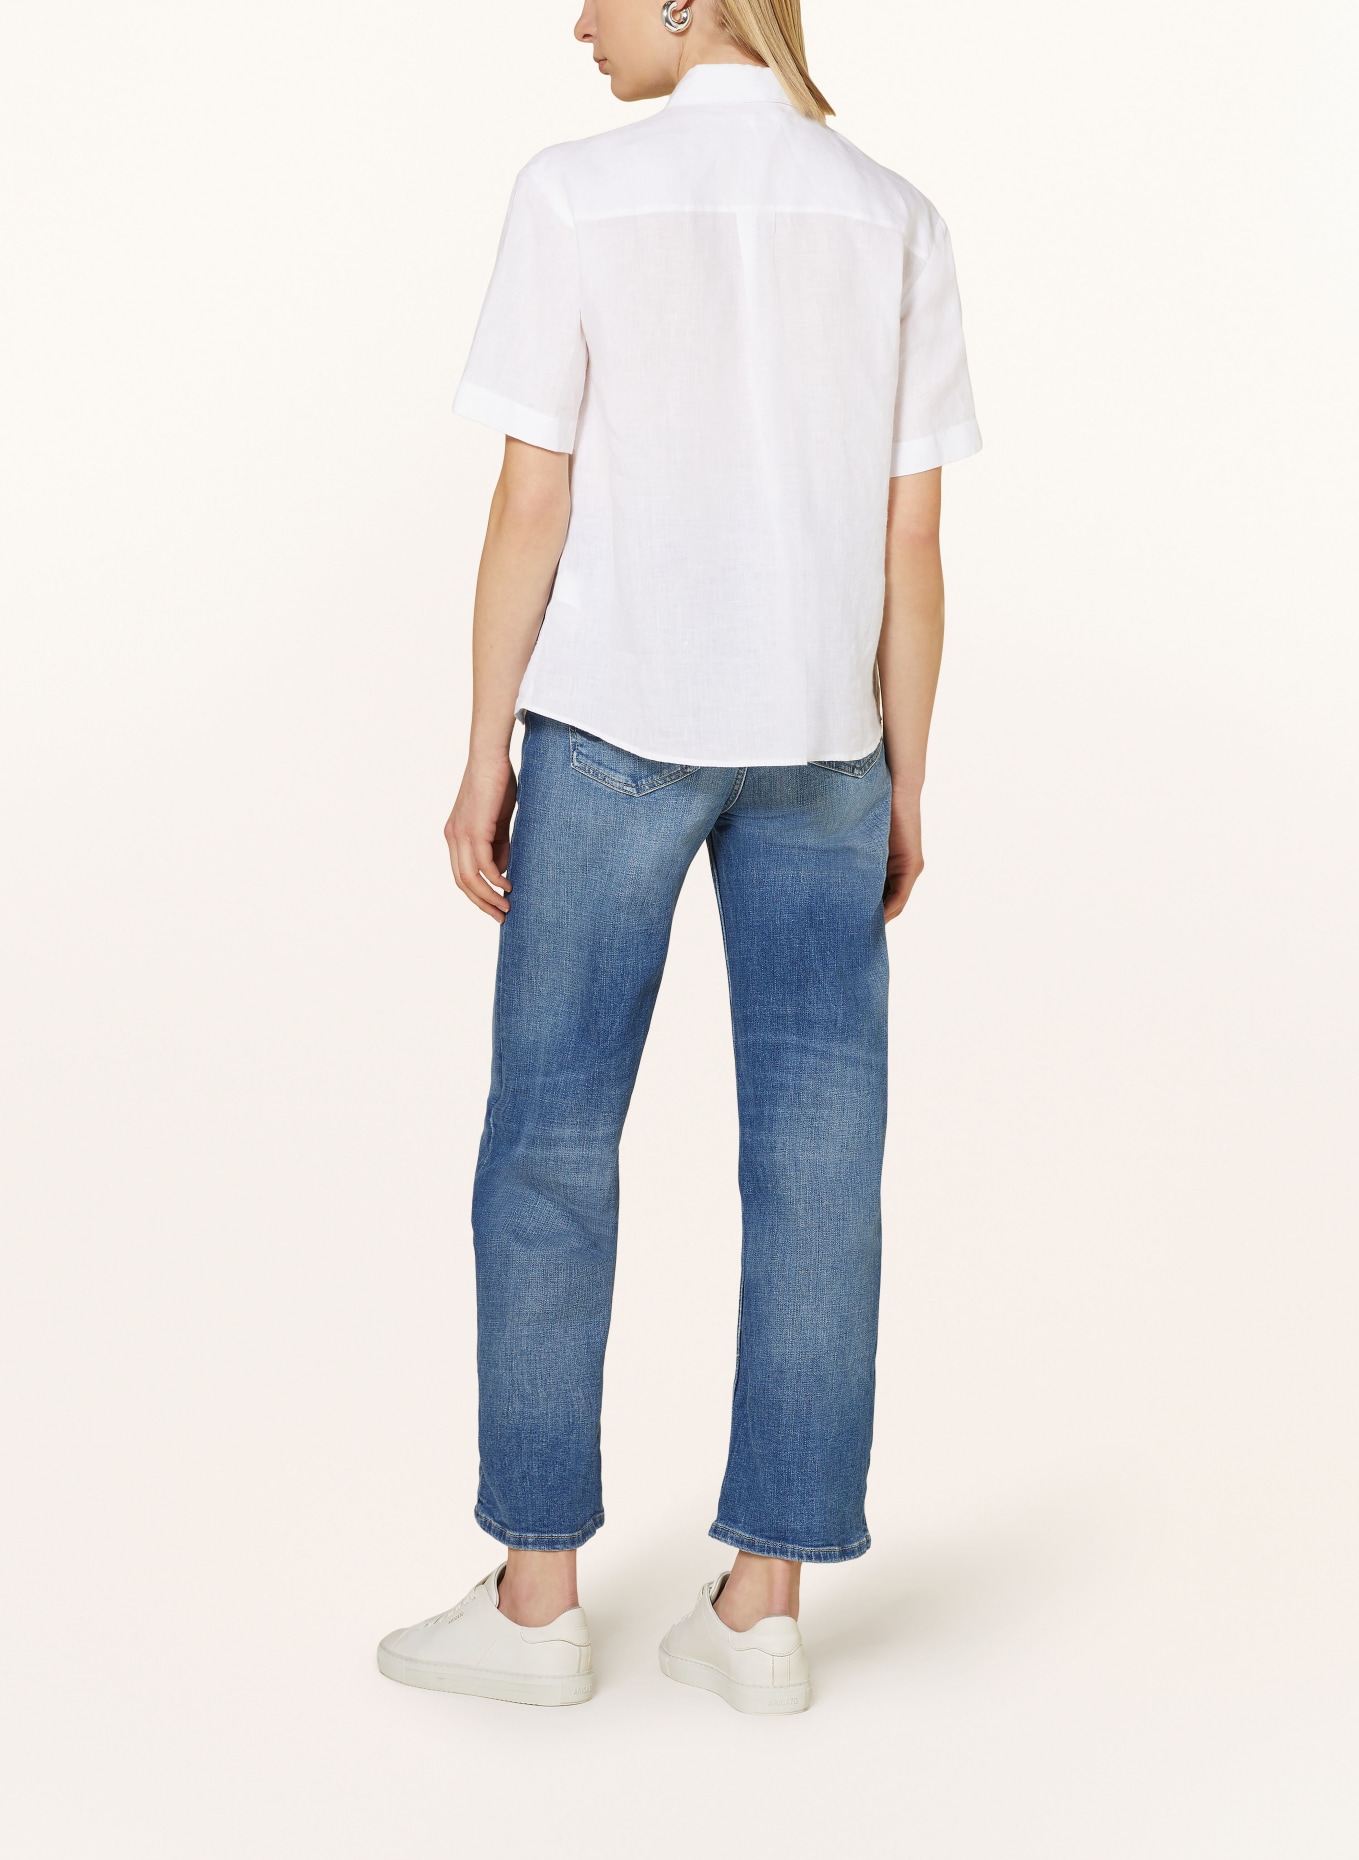 seidensticker Shirt blouse made of linen, Color: WHITE (Image 3)